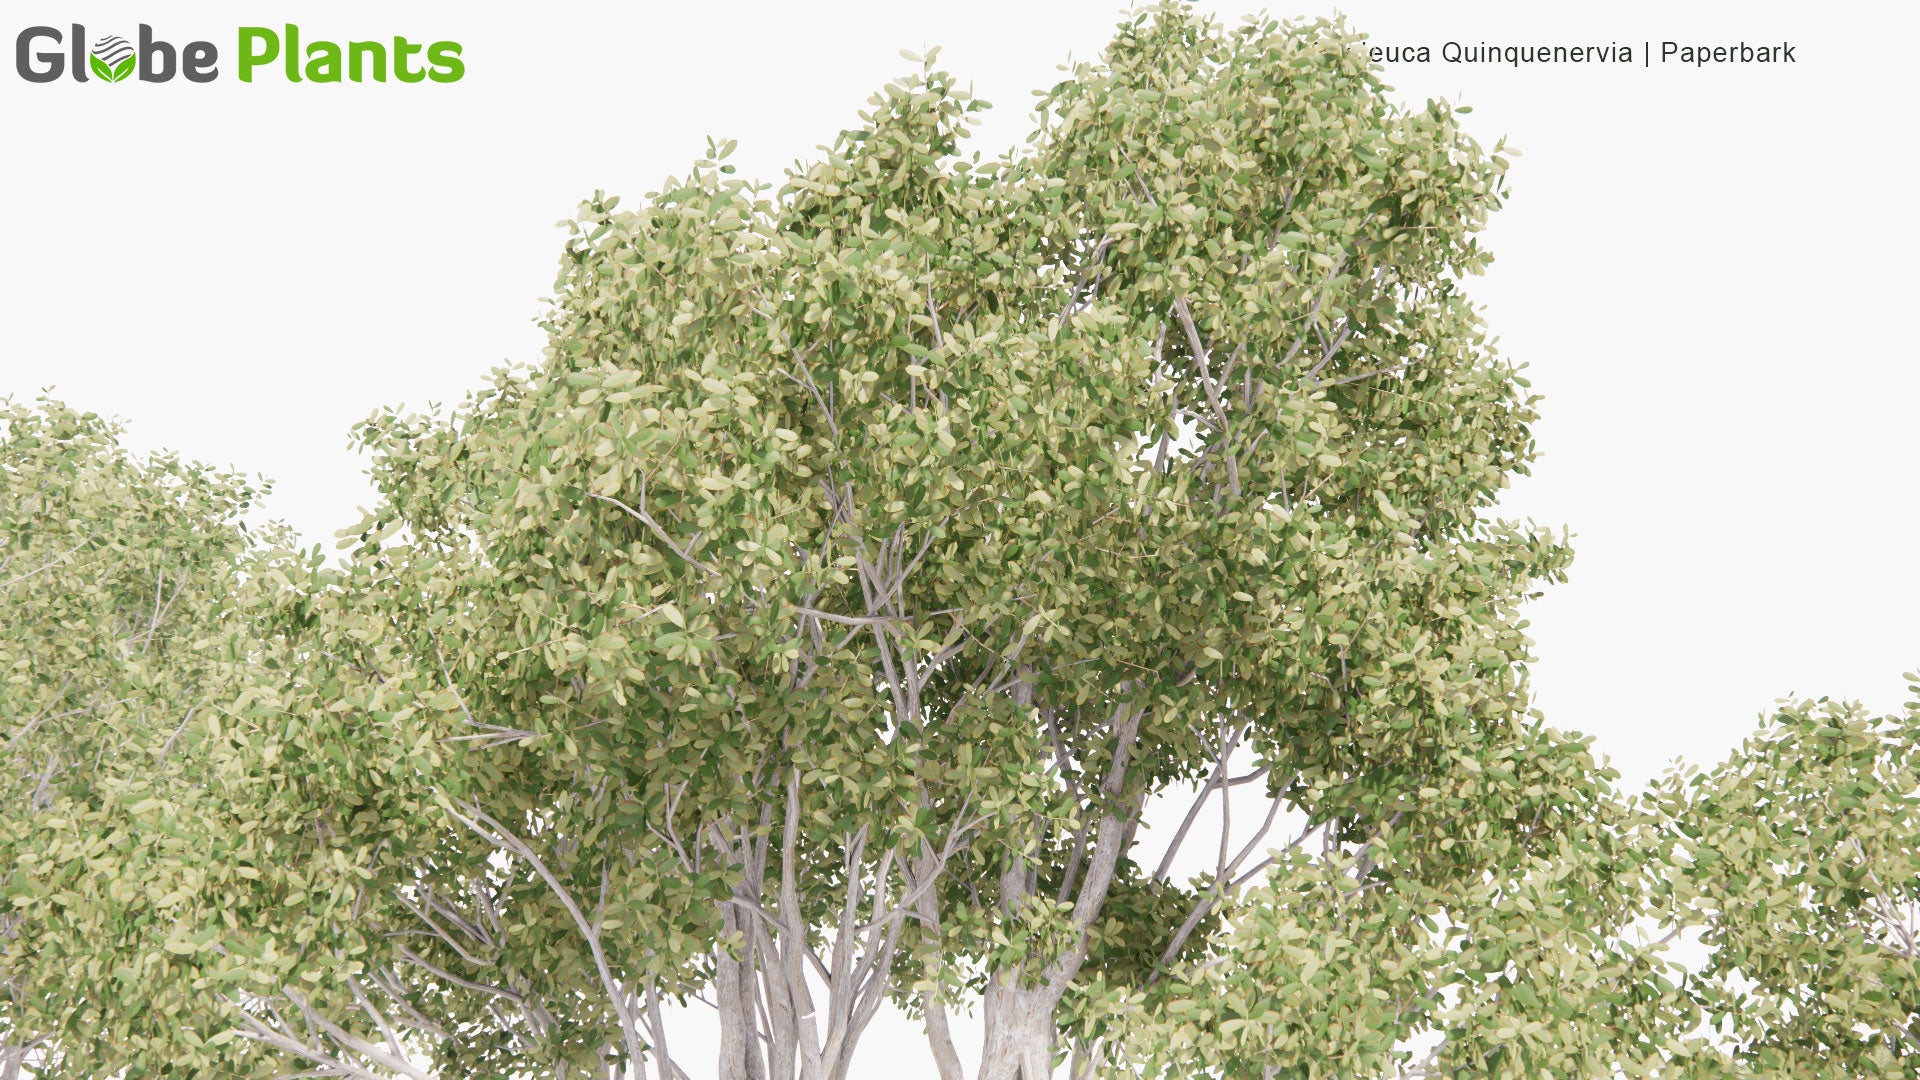 Low Poly Melaleuca Quinquenervia - Broad-Leaved Paperbark, Paper Bark Tea Tree, Punk Tree, Niaouli (3D Model)